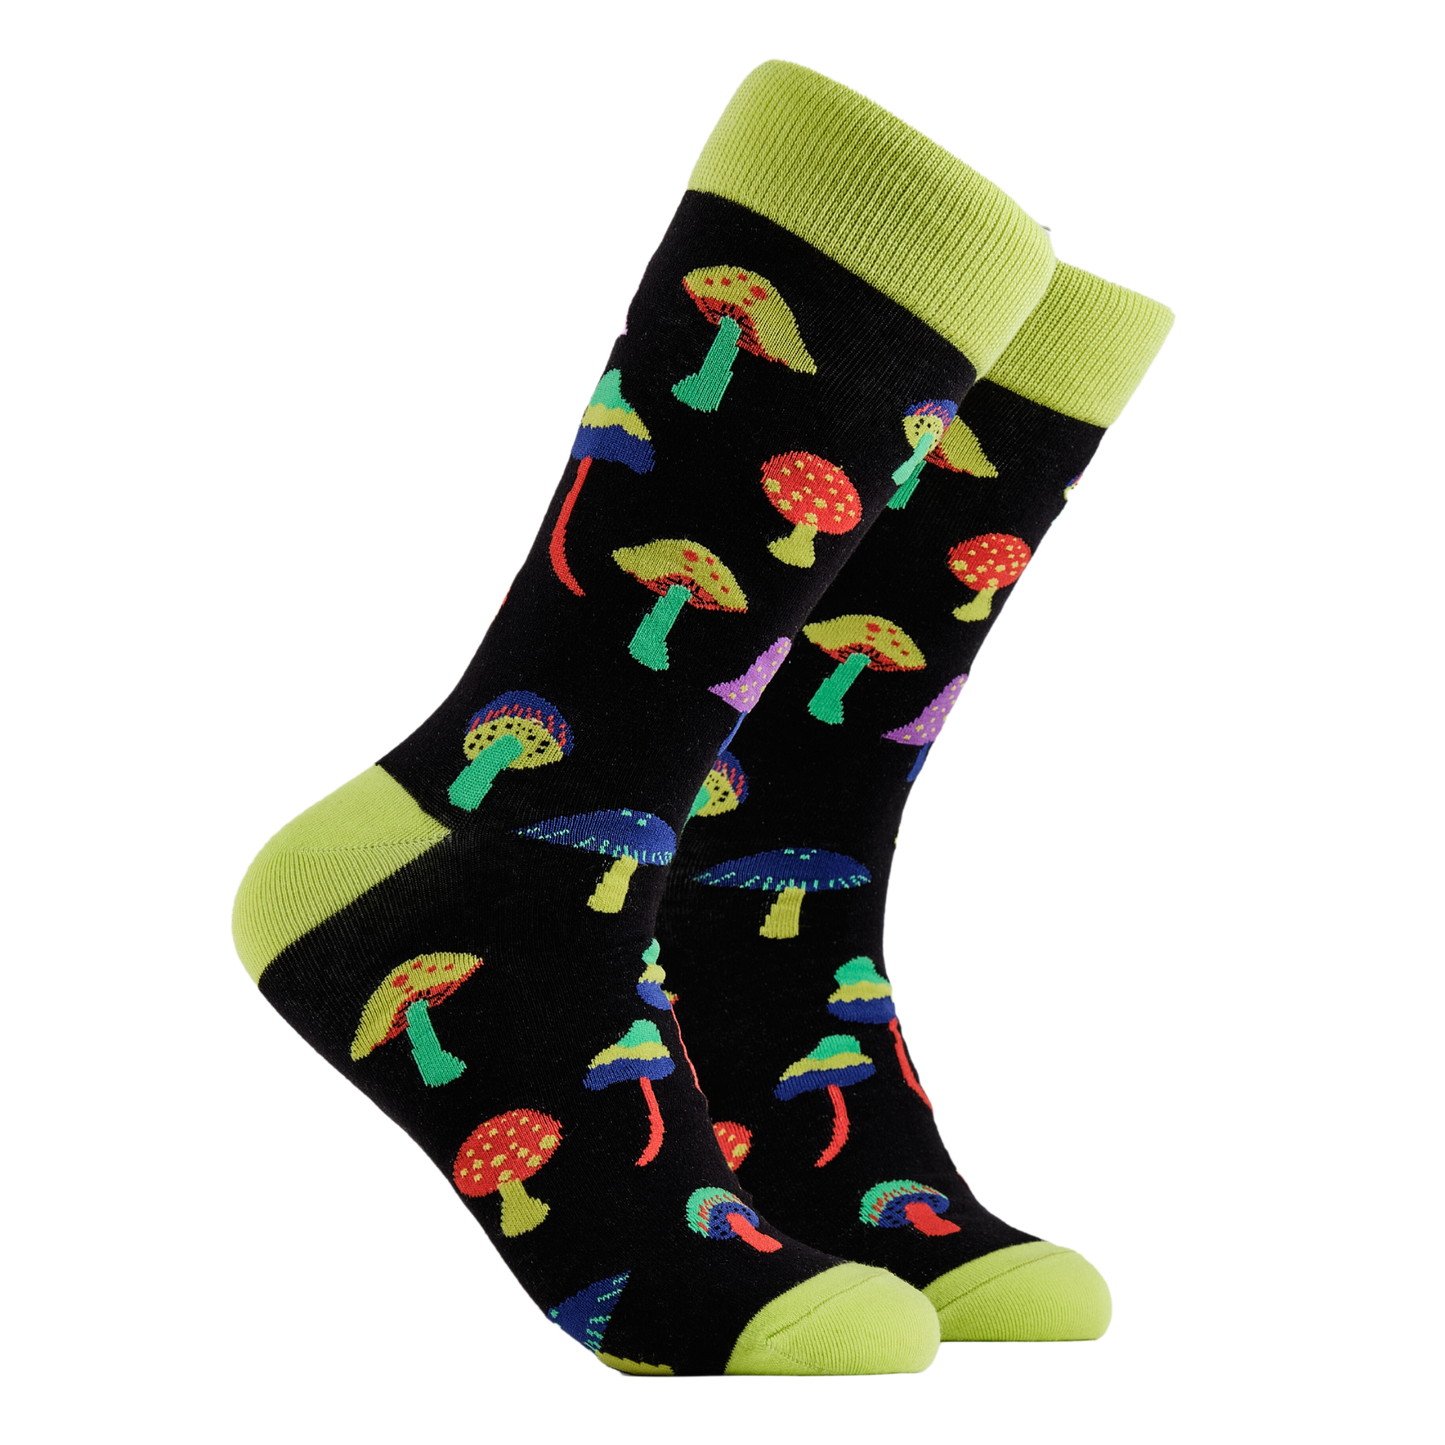 Magic Mushroom Socks - Mushroom Trippin'.  A pair of socks depicting magic mushrooms. Black legs, bright yellow cuff, heel and toe.